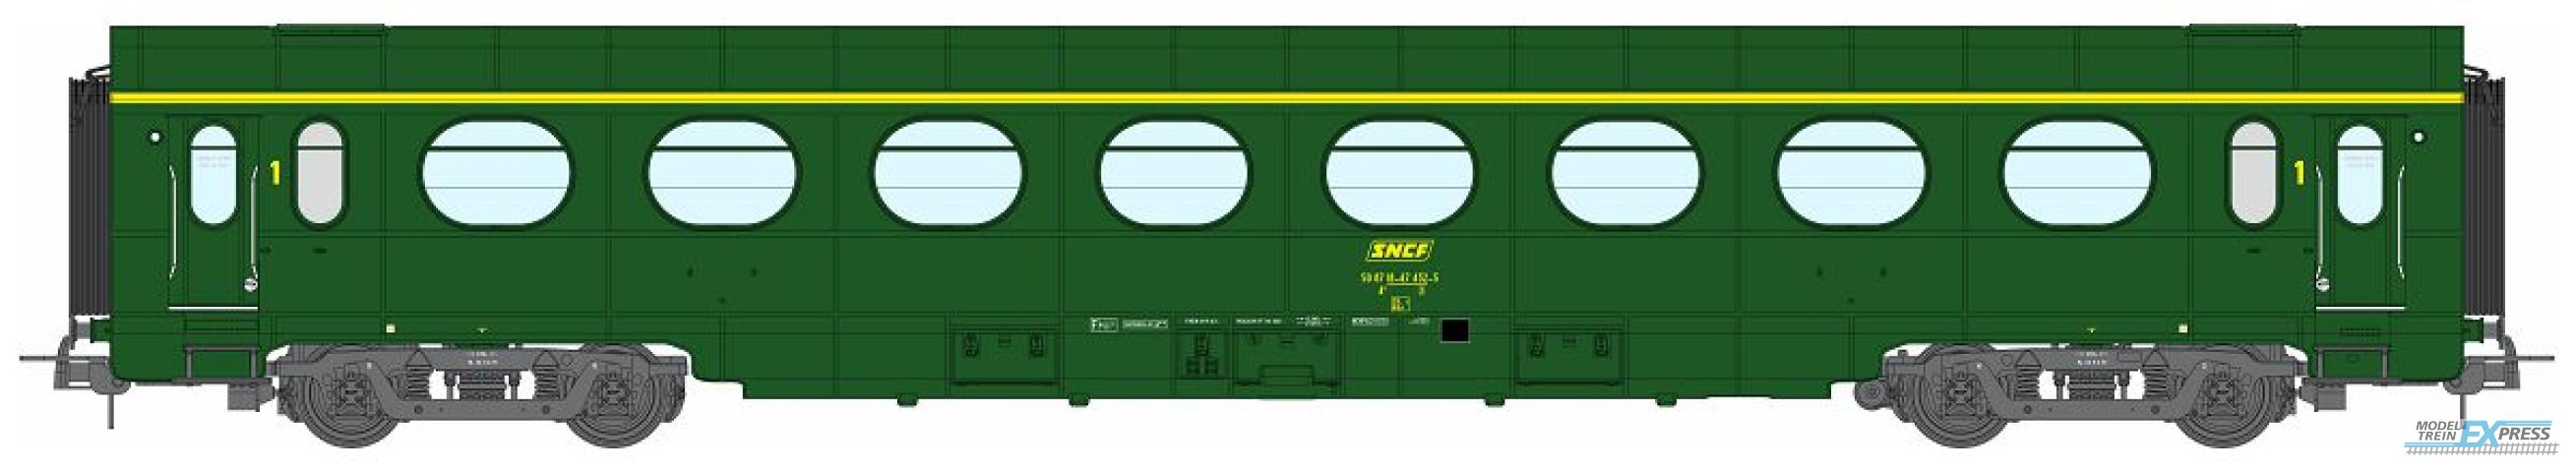 REE models VB-476 ETAT Car, A8, green 301, SNCF Period IV